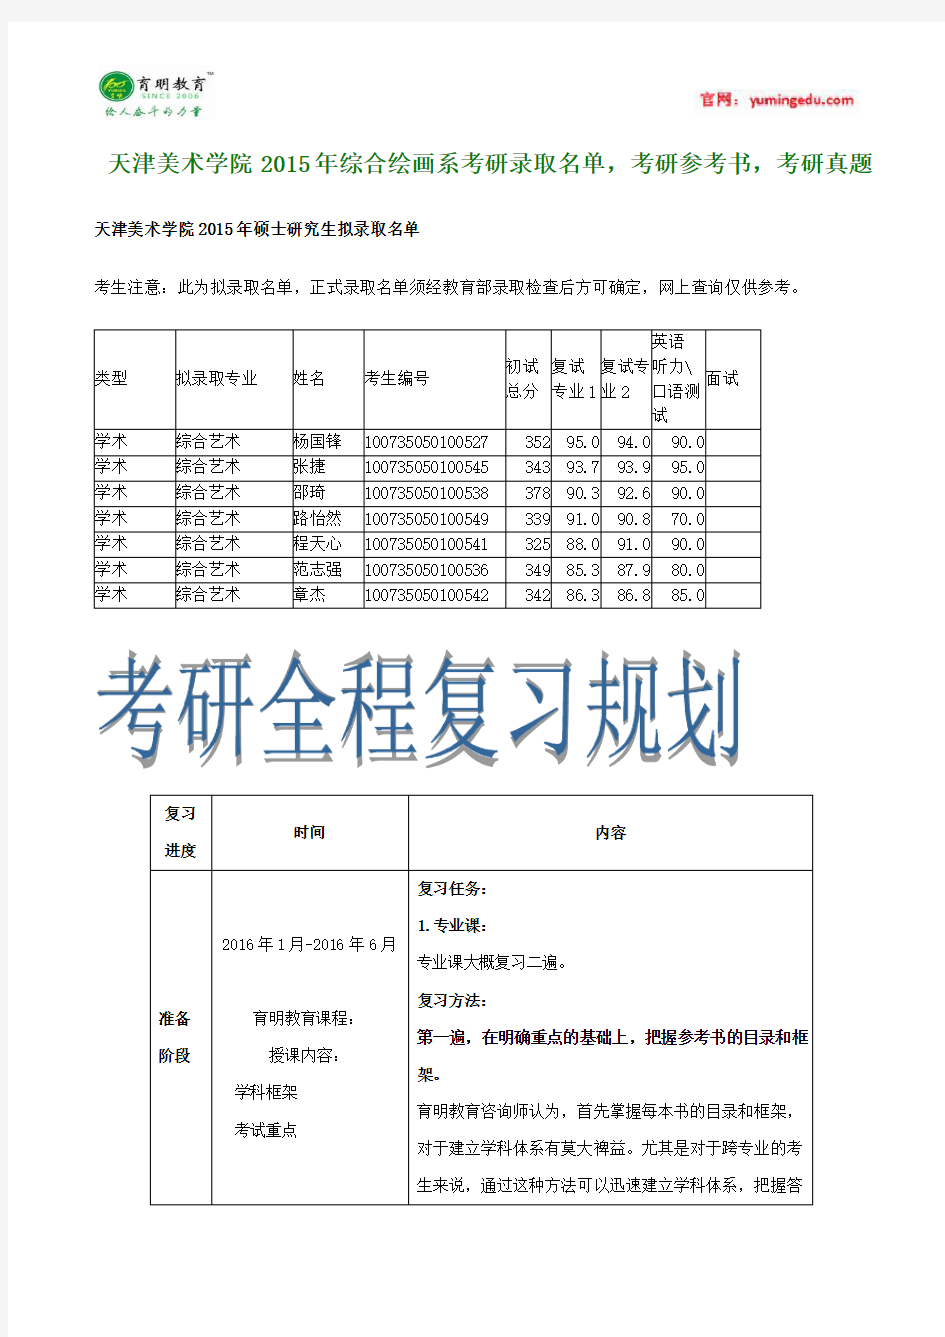 天津美术学院 2015年综合绘画系考研录取名单,考研参考书,考研真题